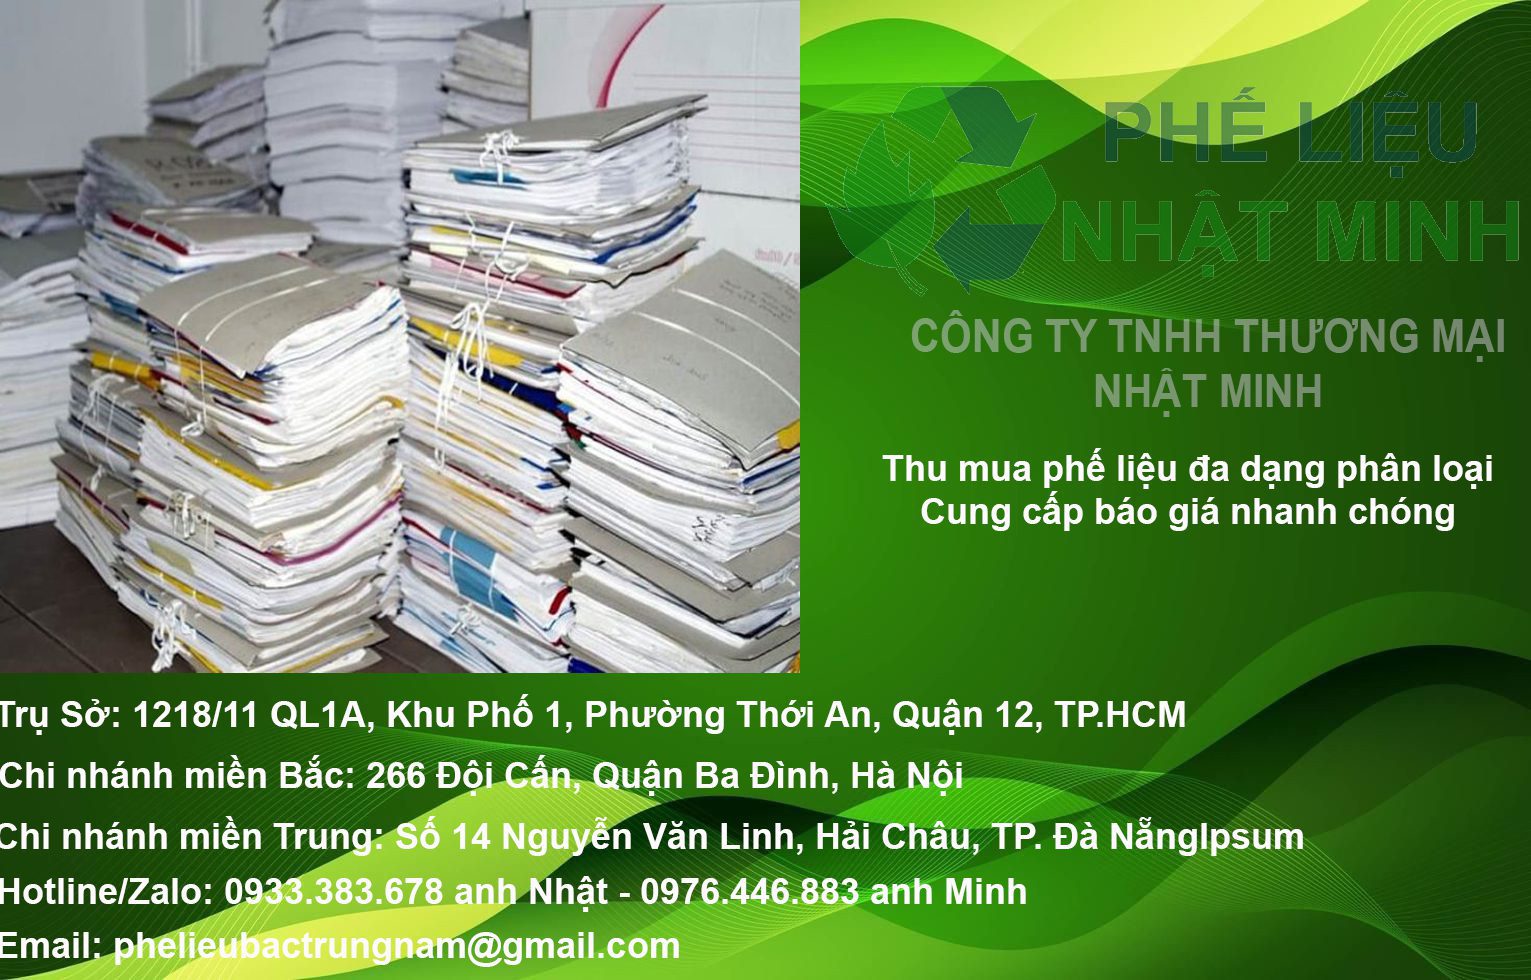 Thu Mua Phe Lieu So Luong Lon Tai Cong Ty Nhat Minh